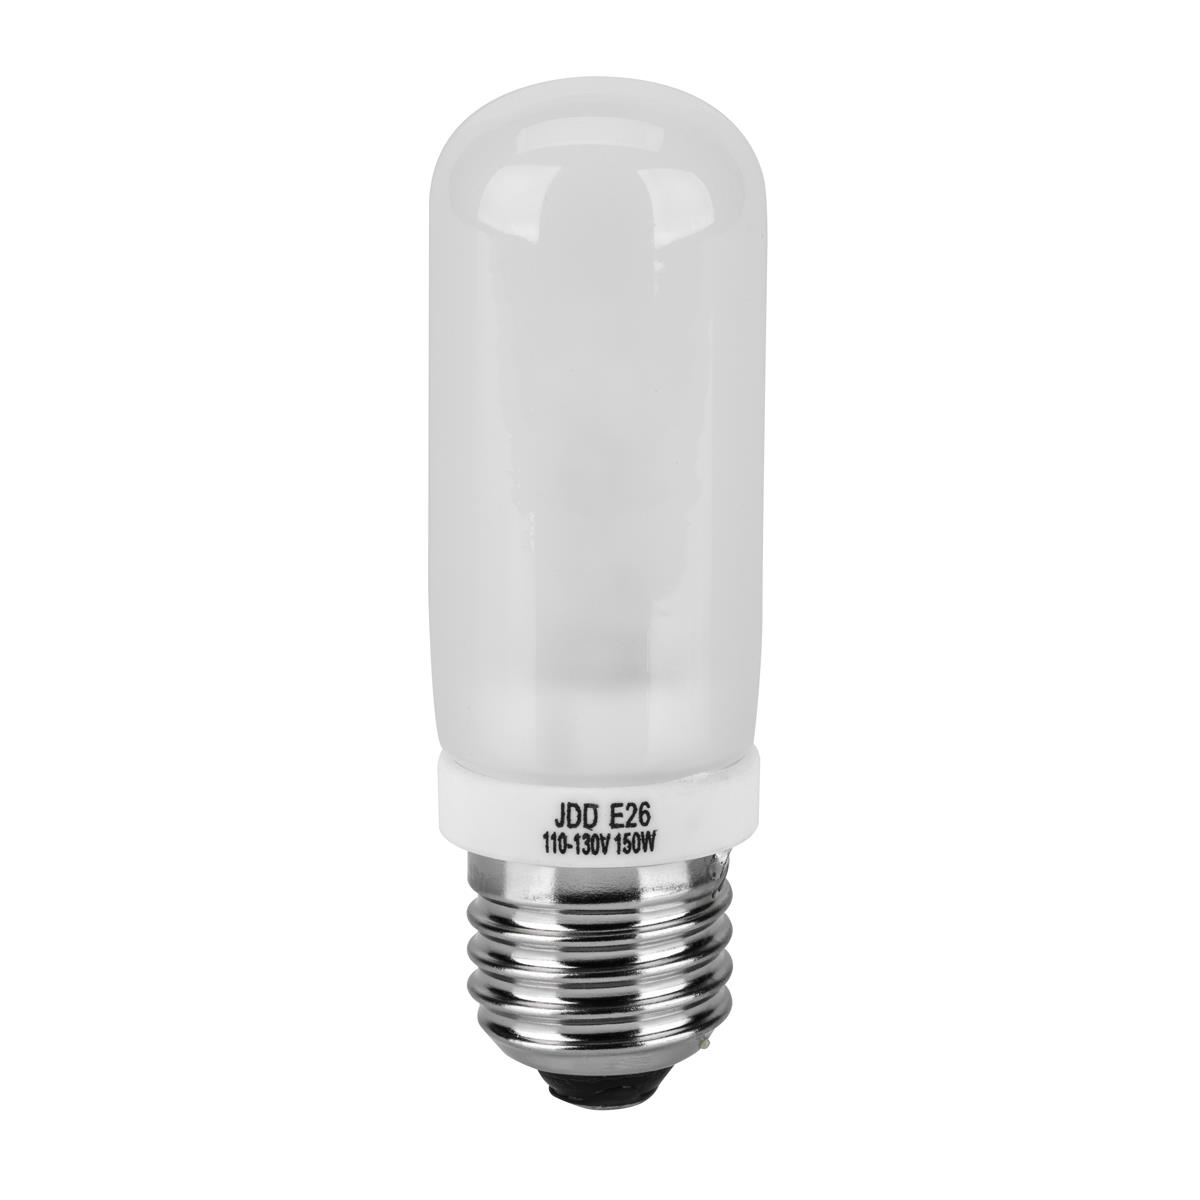 Flashpoint 250 Watt Modeling Lamp for 1220M Monolight E26 Edison Type Base 